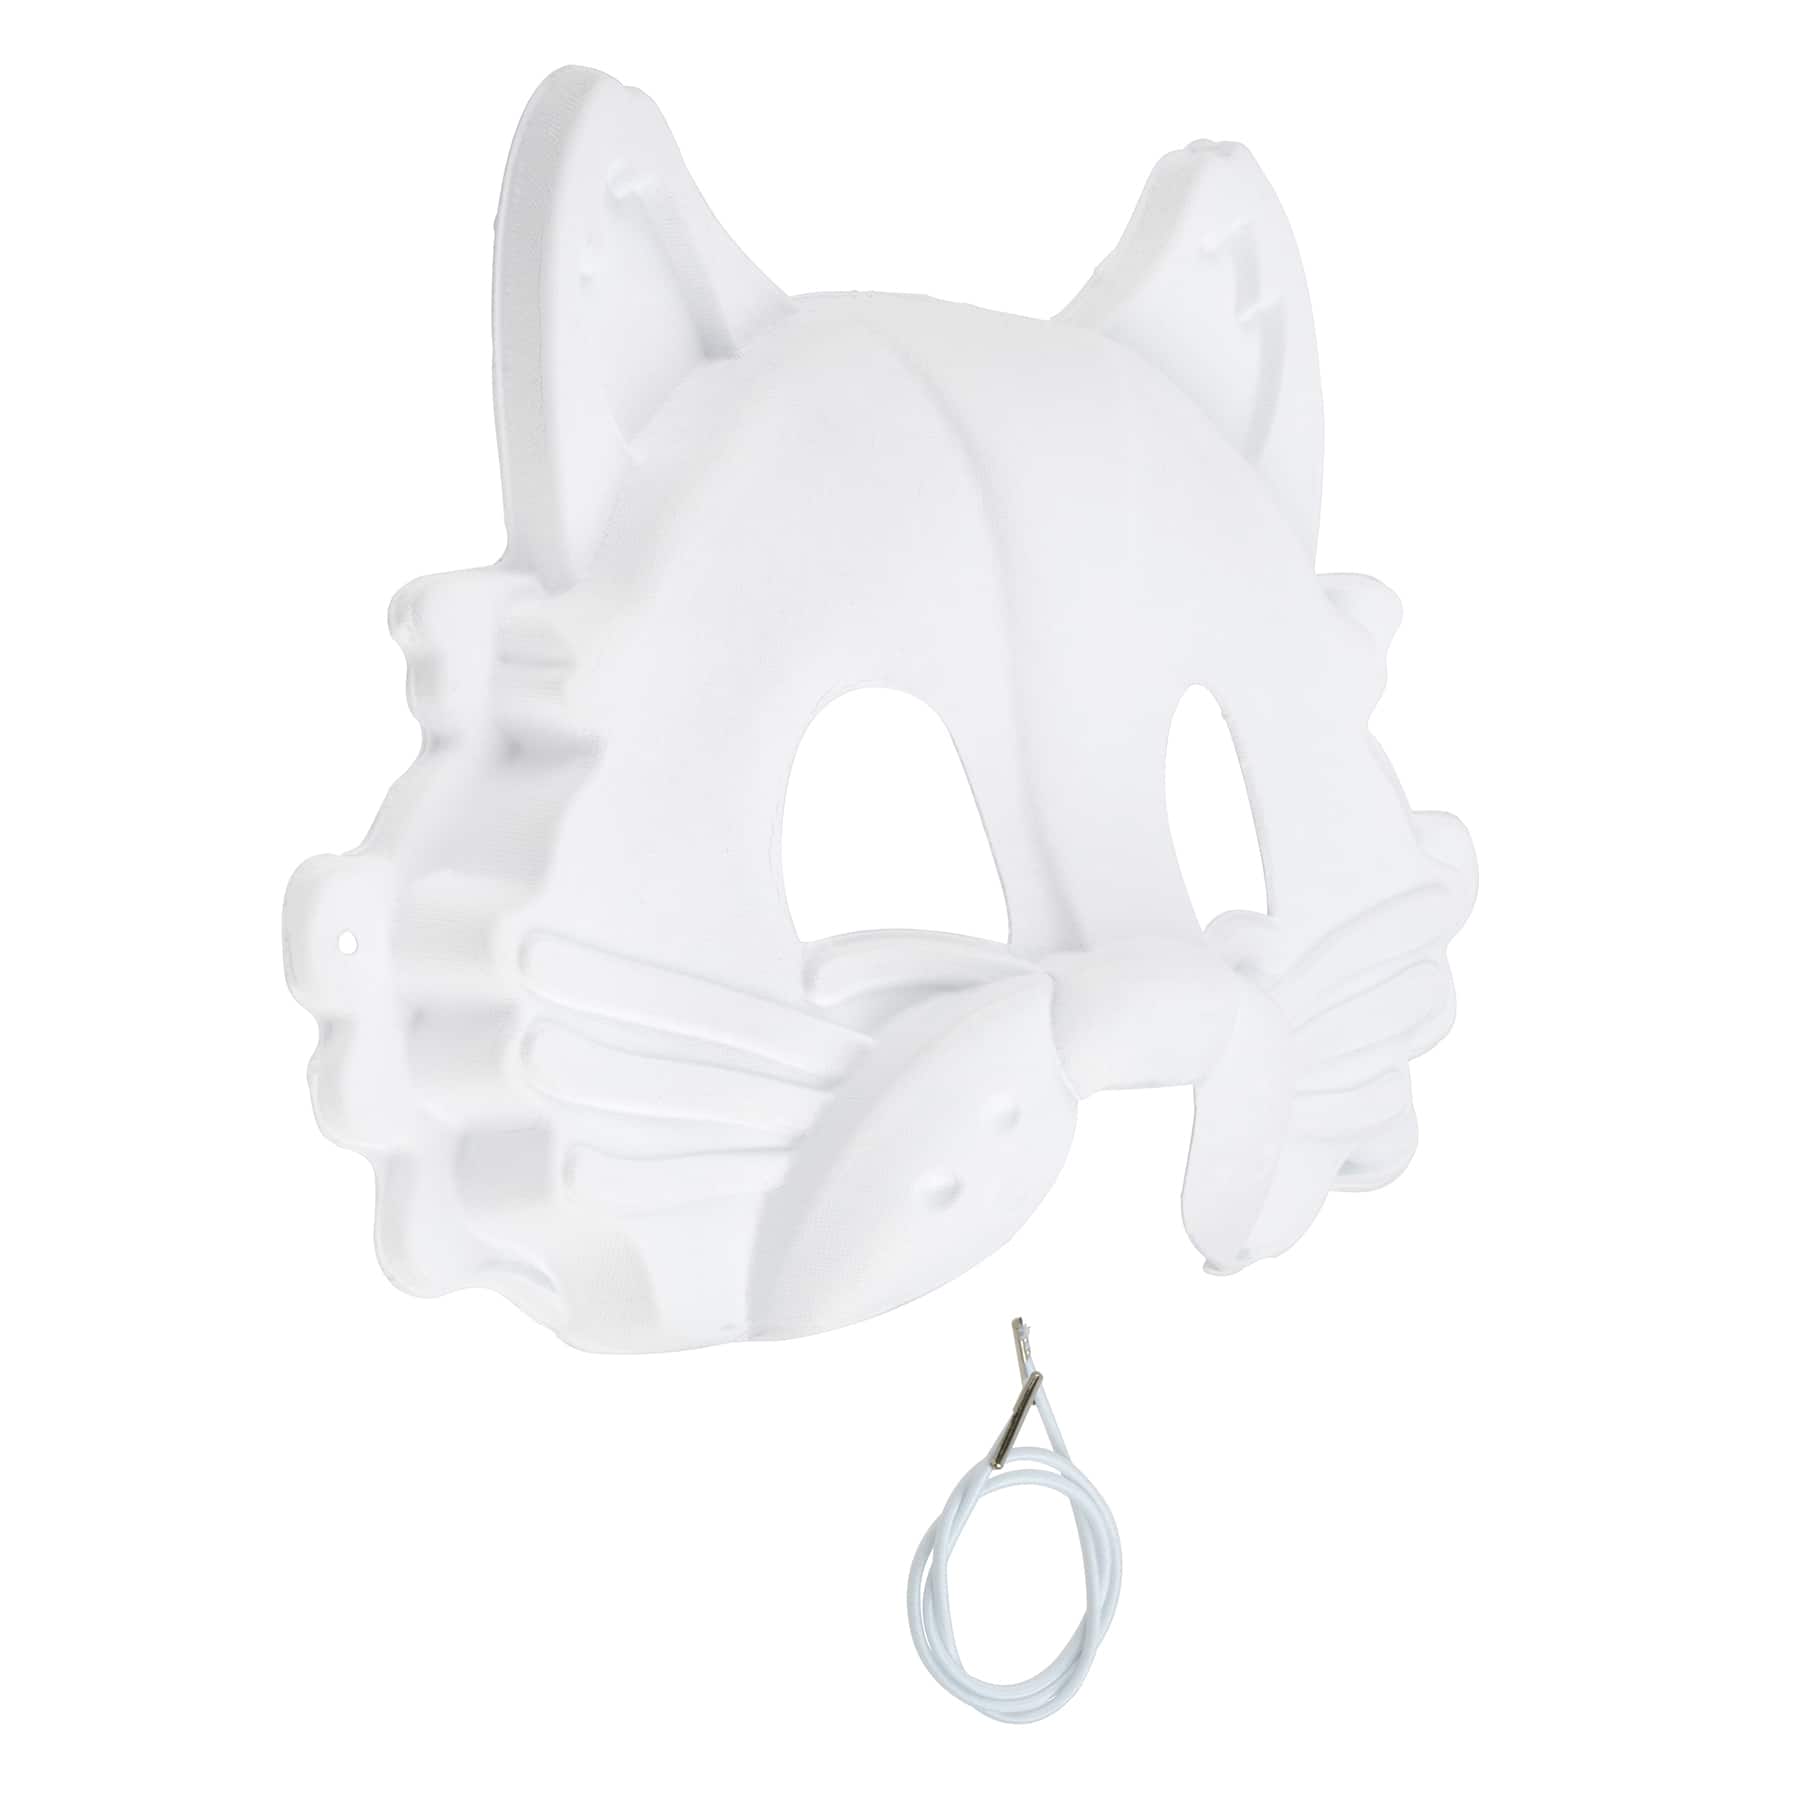 Cat Paper Mache Mask by Creatology&#x2122;